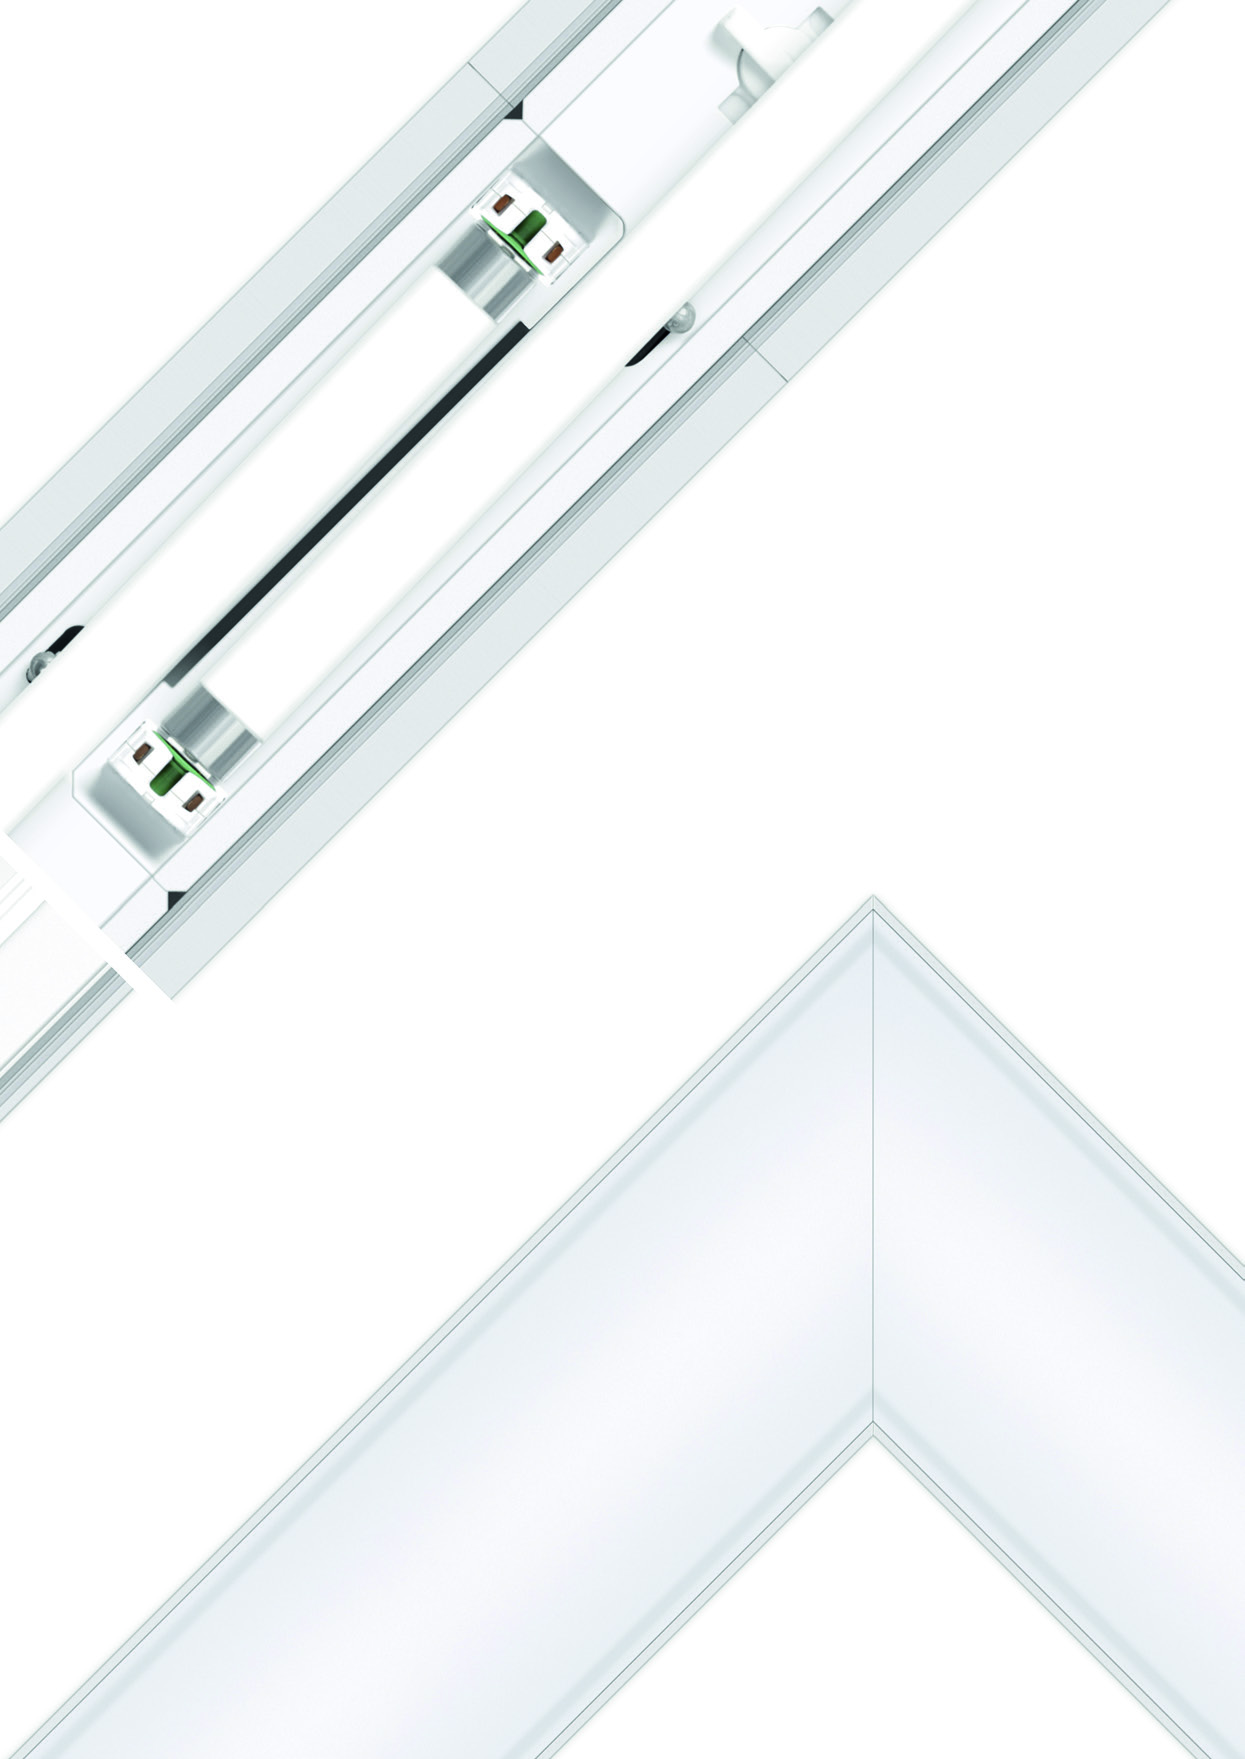 13 VERSIÓN T5 Luminaria para lámparas Fluorescentes solapadas o en línea, disponible con difusor BLINE o reflector doble parabólico brillante PB.